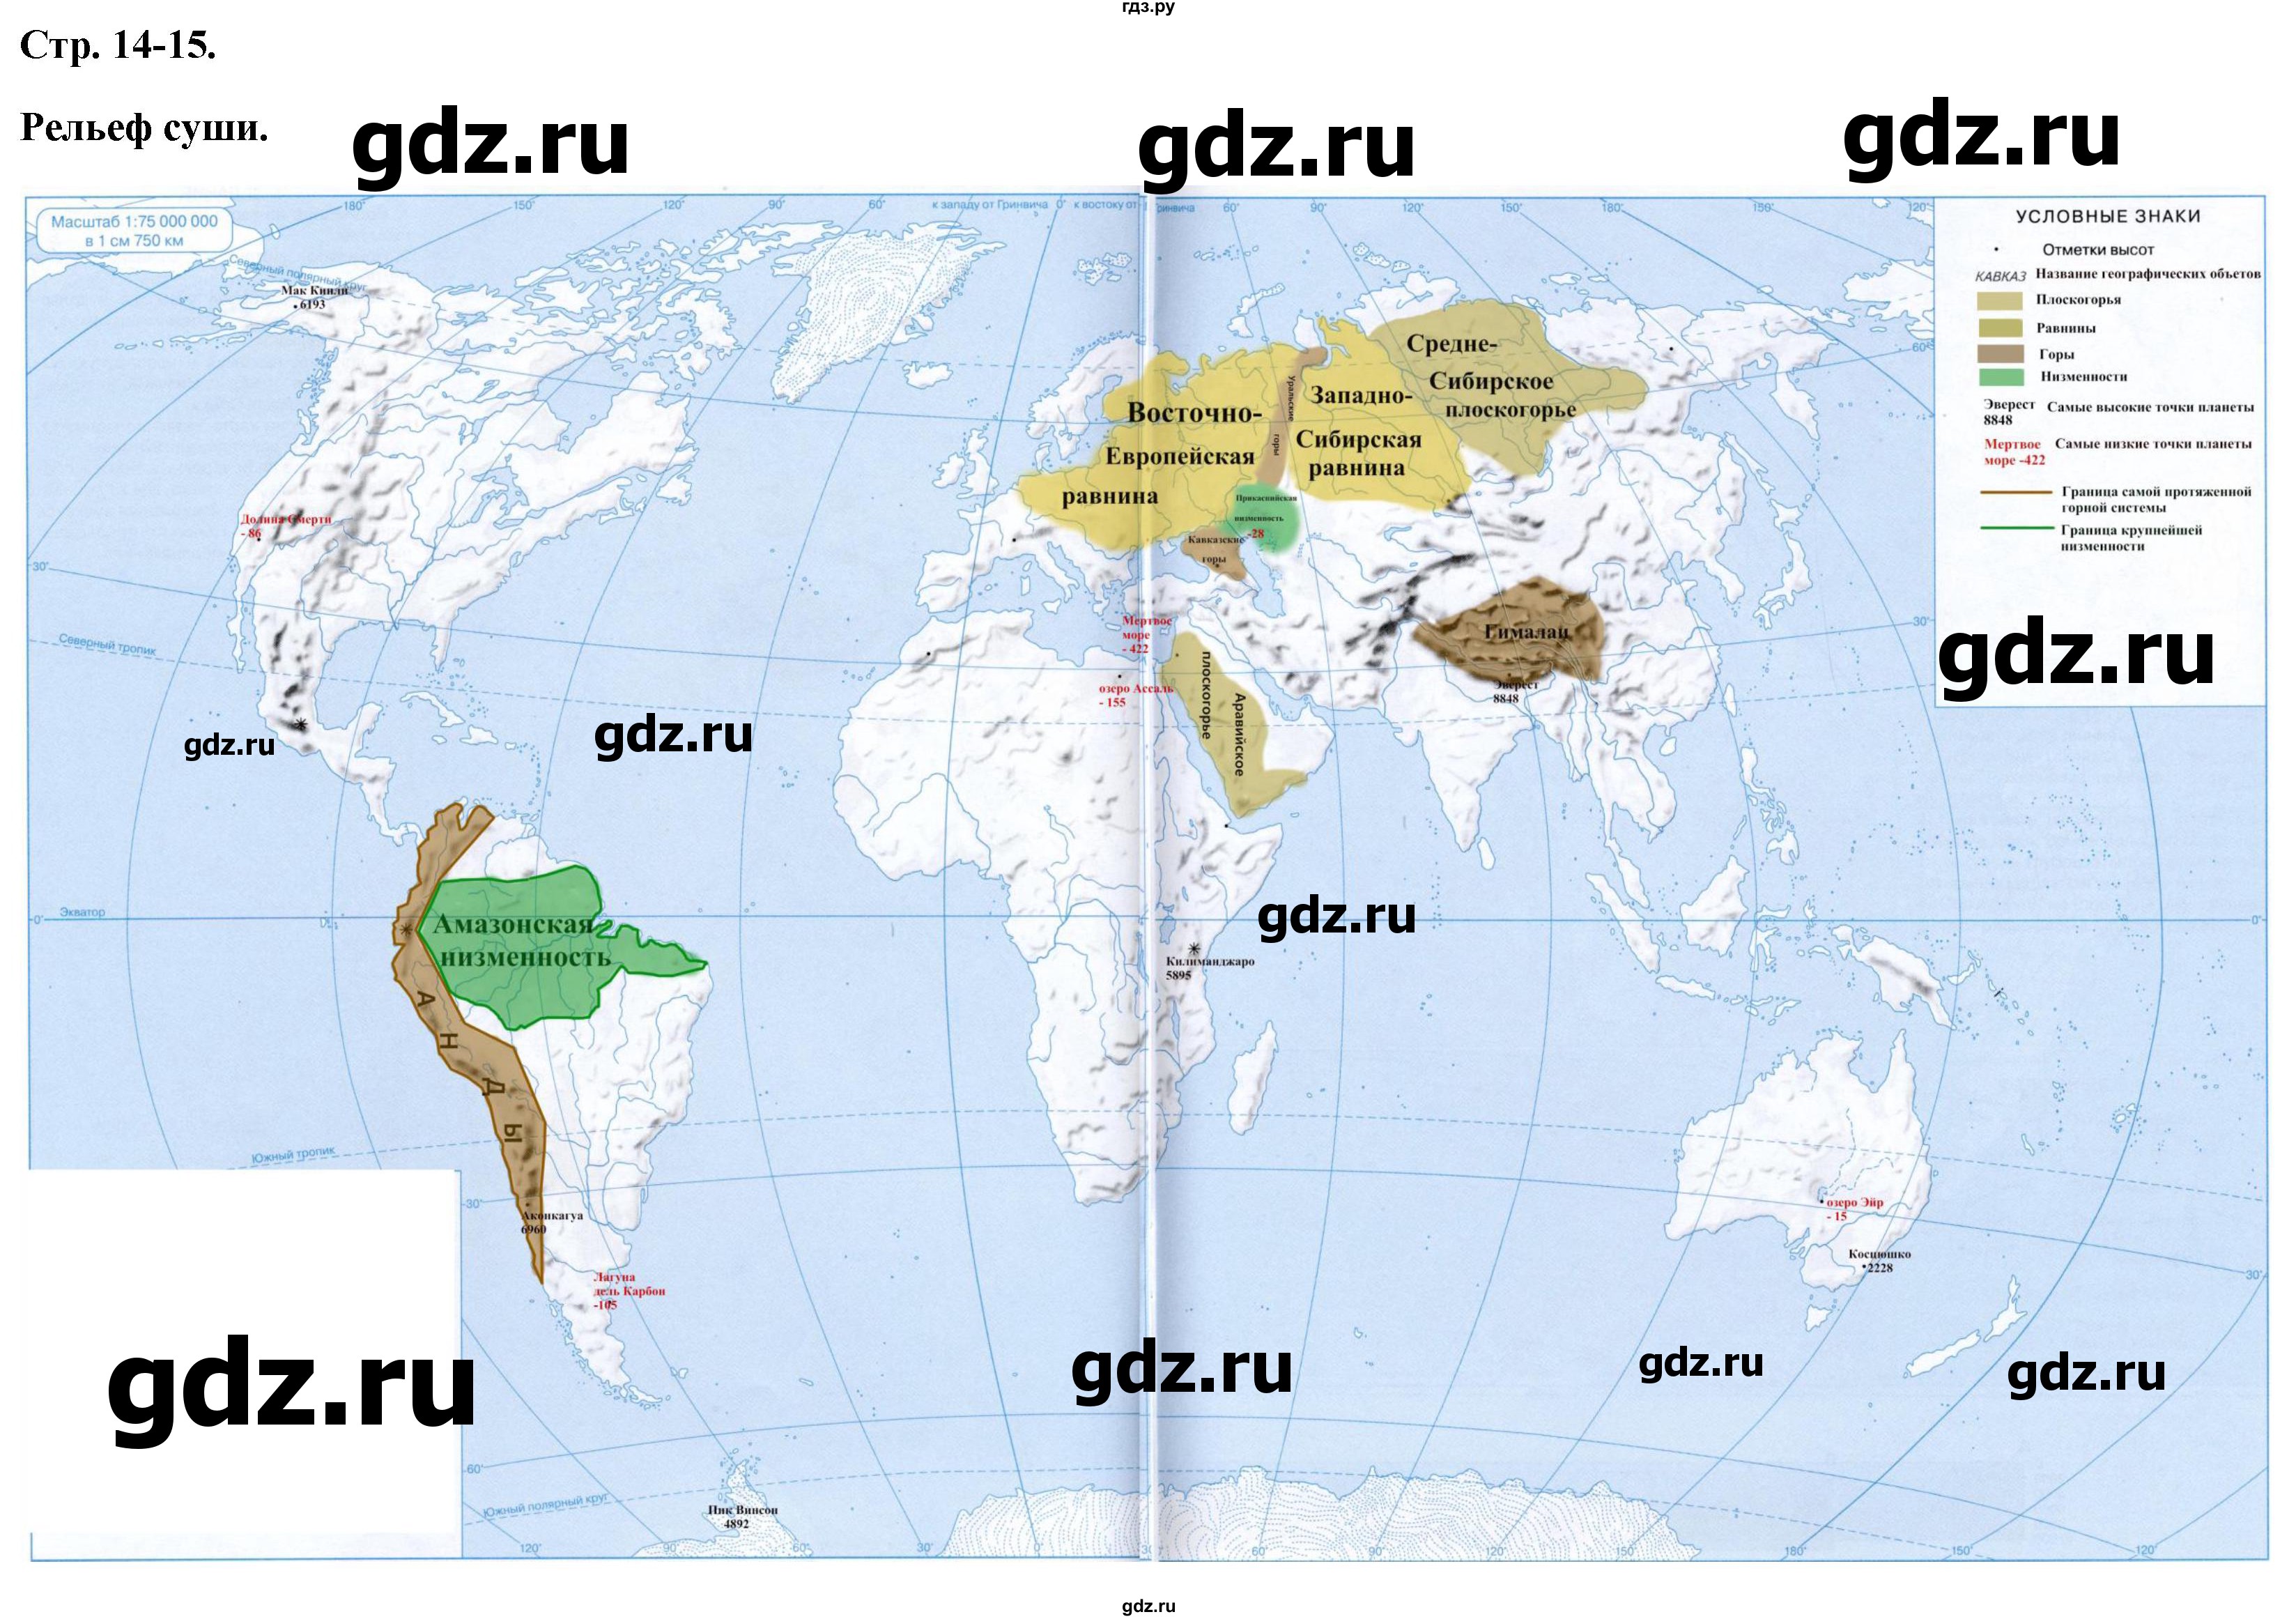 ГДЗ по географии 6 класс Курбский контурные карты  контурные карты - стр.14-15, Решебник